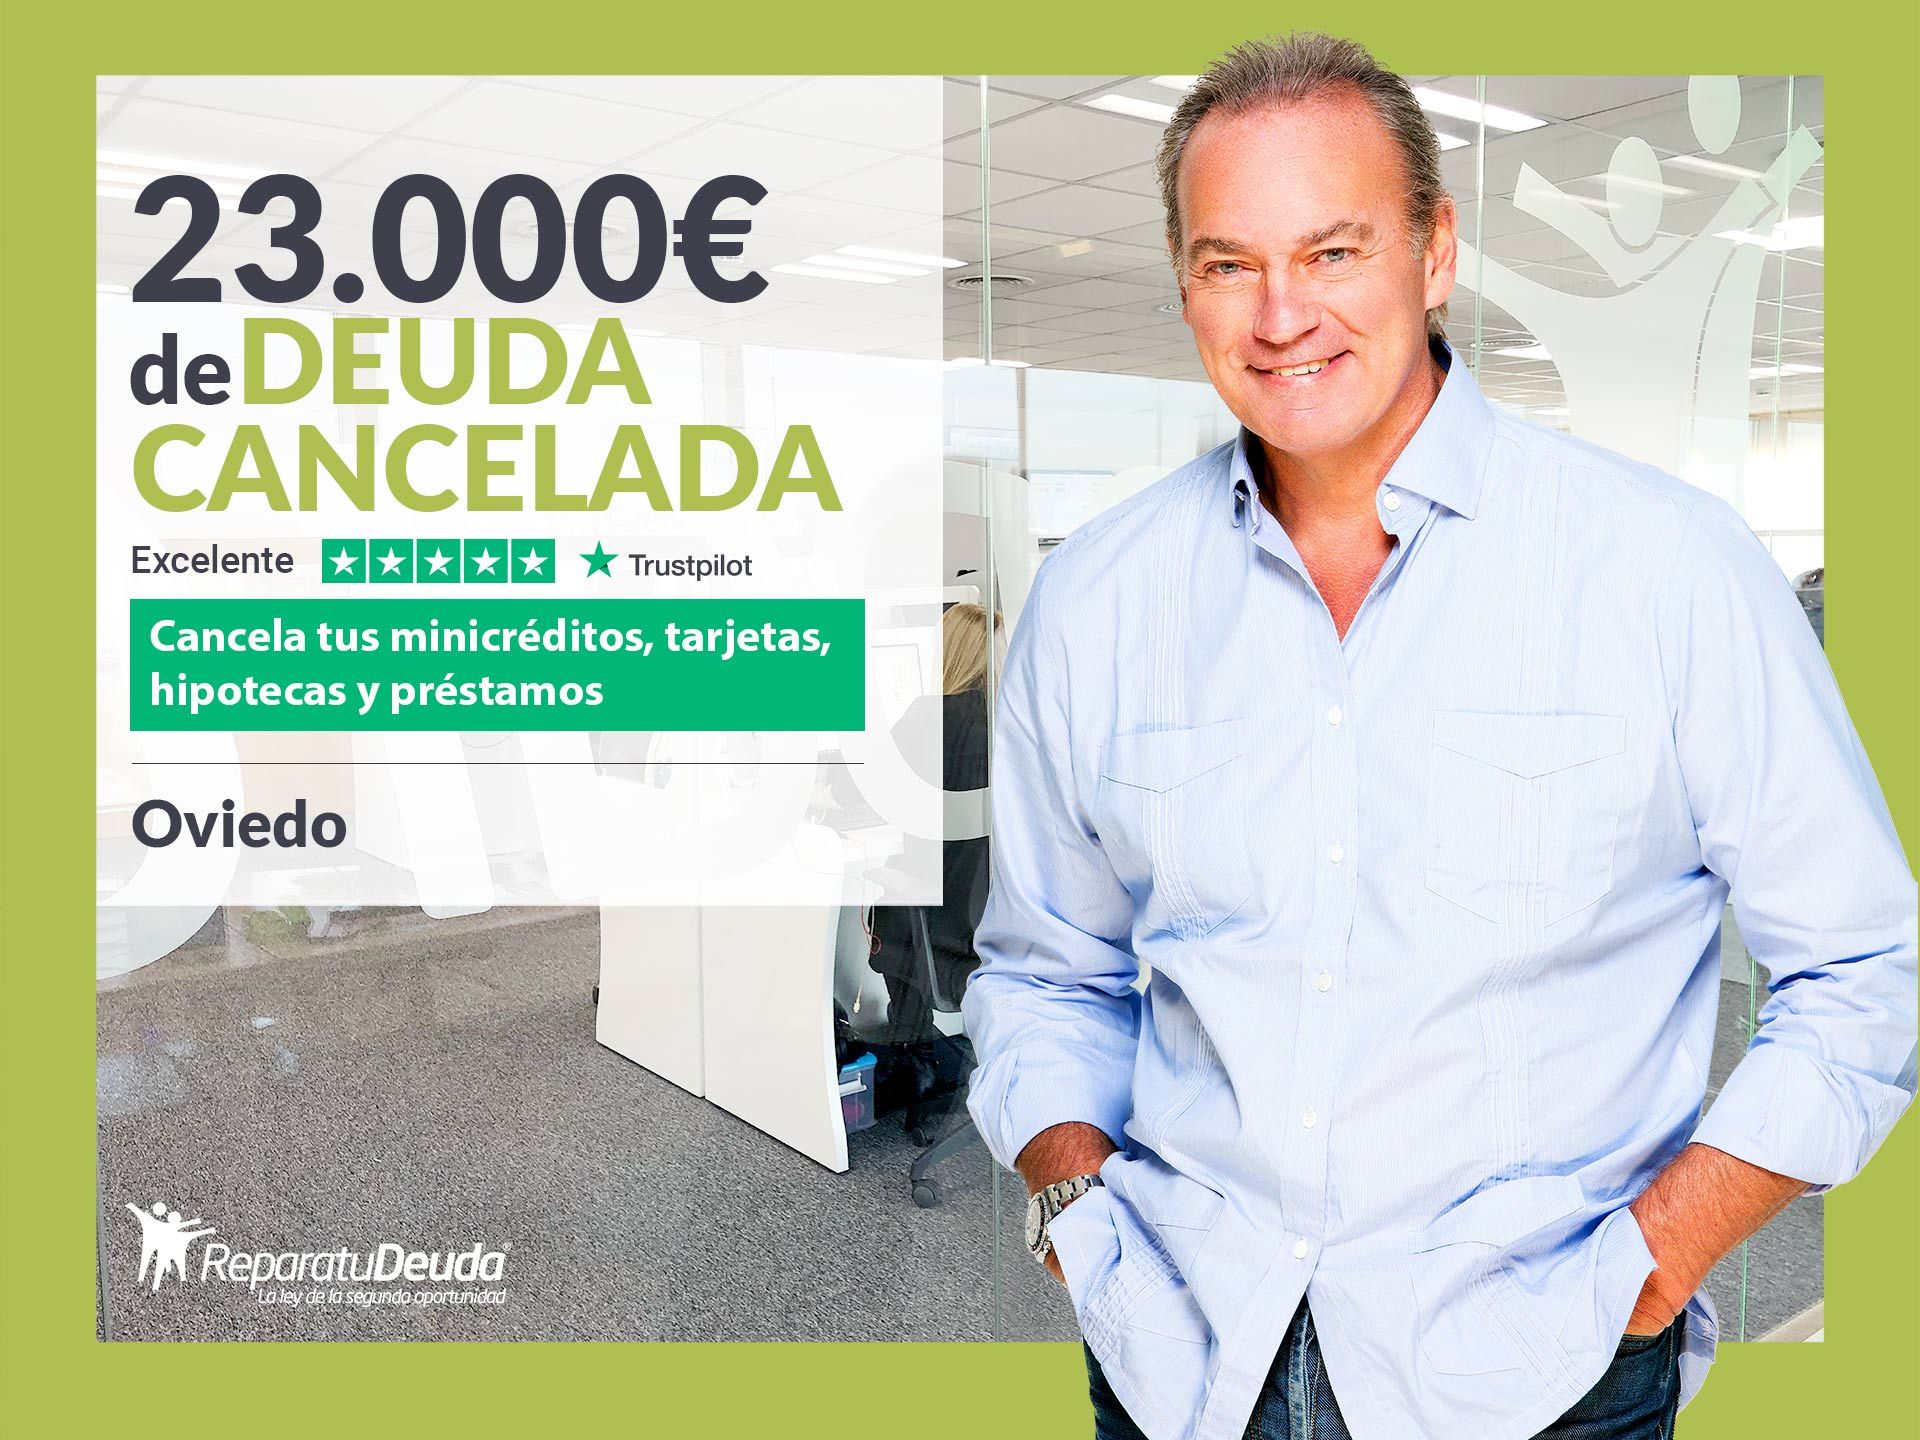 Repara tu Deuda Abogados cancela 23.000? en Oviedo (Asturias) con la Ley de Segunda Oportunidad